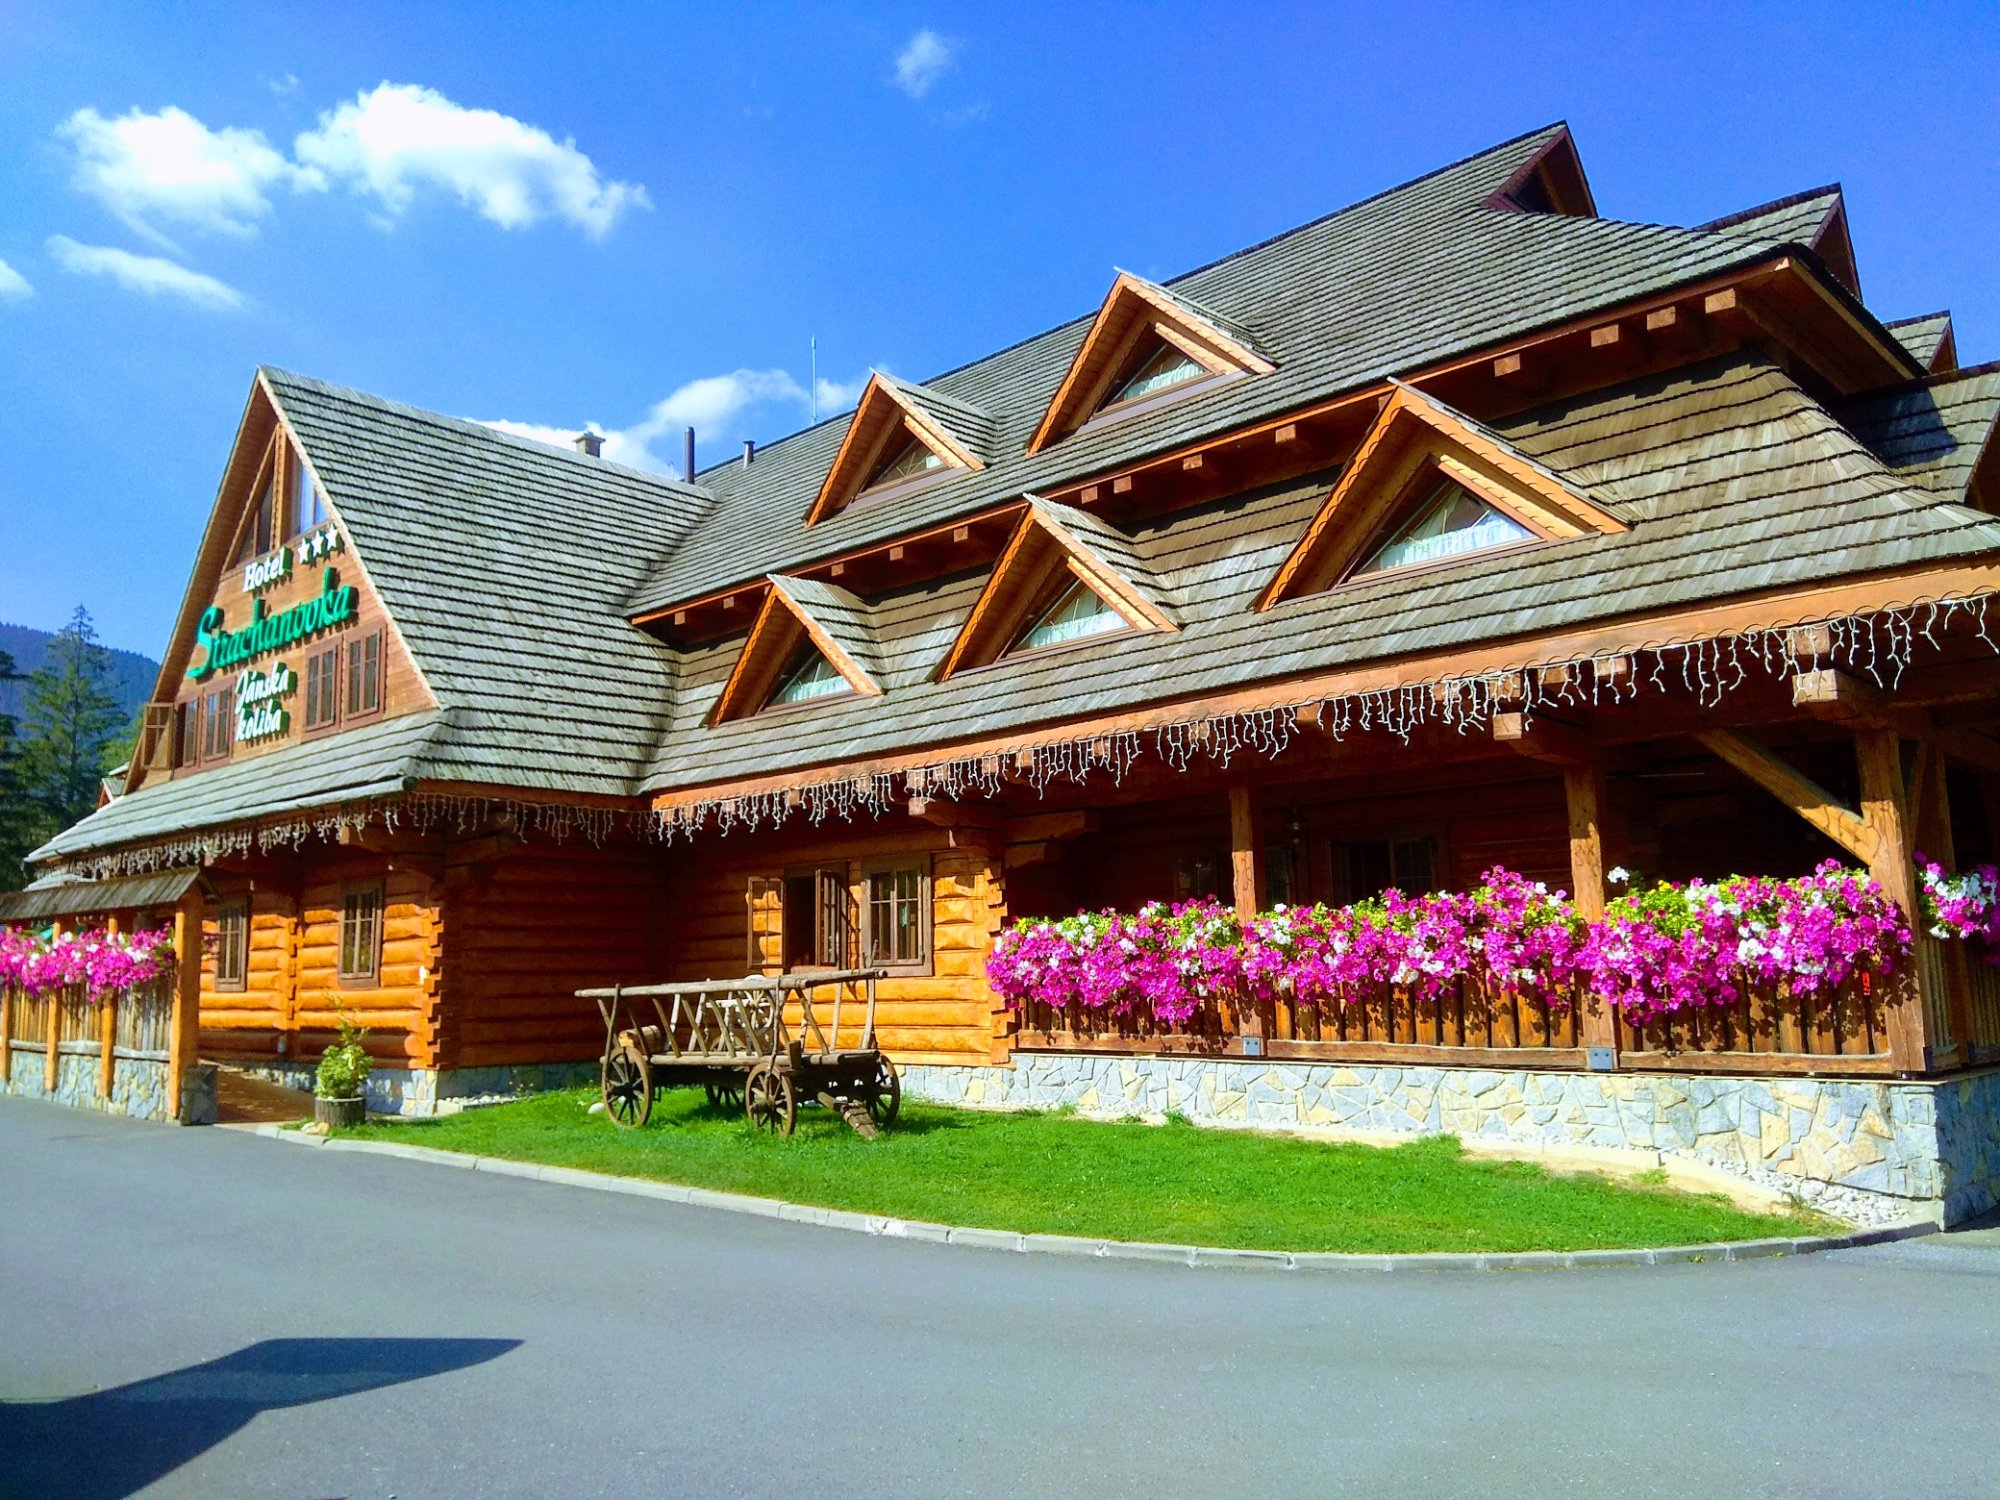 Hotel photo 3 of Hotel Strachanovka - Janska Koliba.